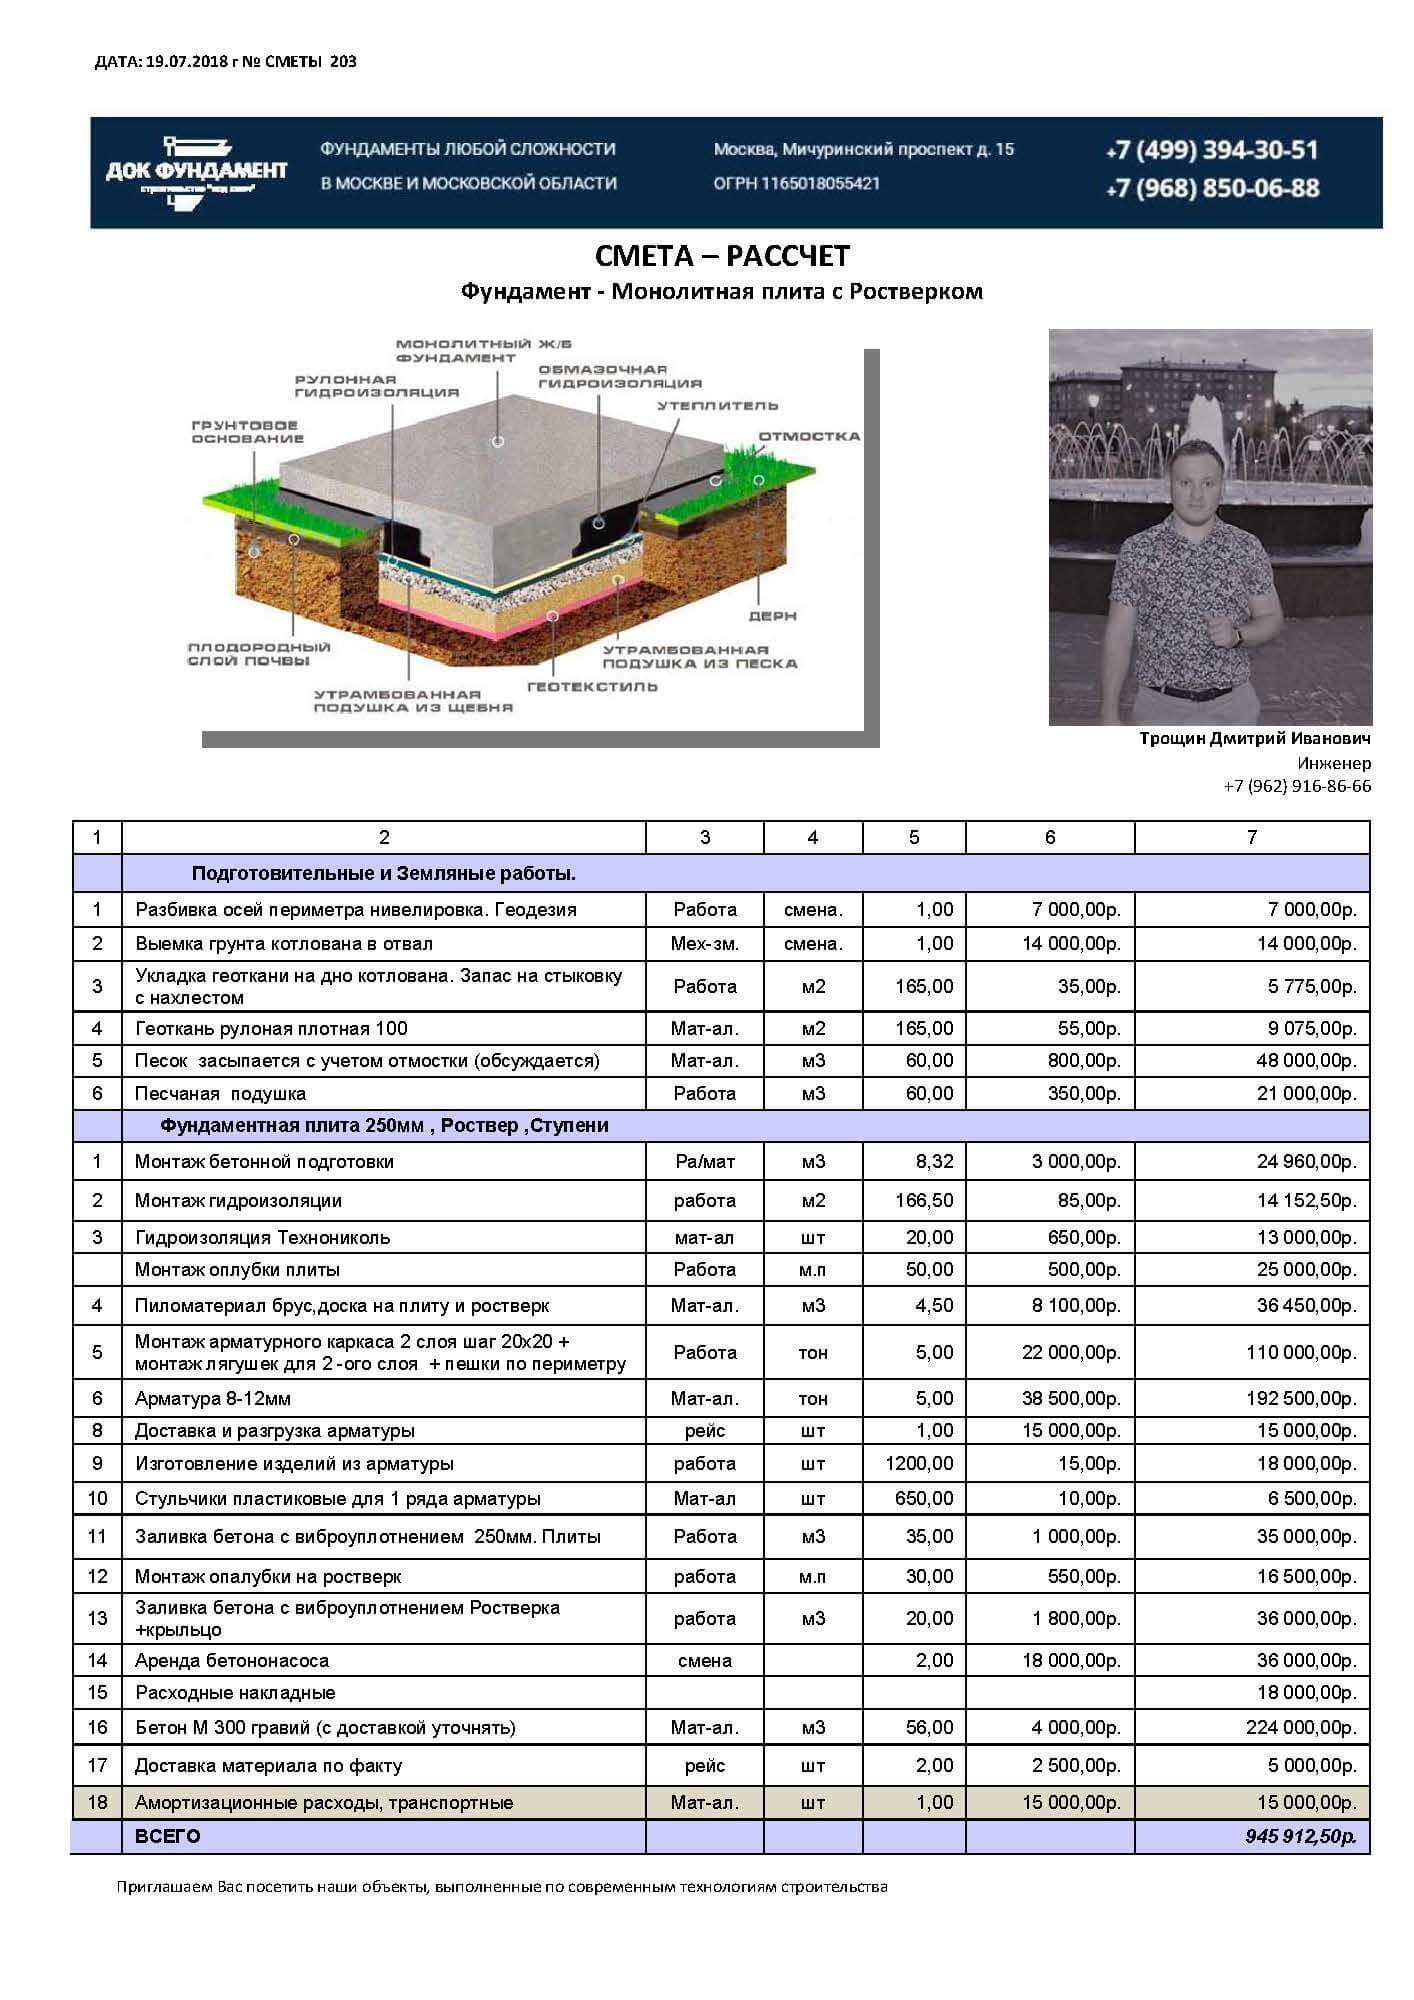 Ленточный фундамент под забор: стоимость работы, заливки, примерные расценки за метр погонный и строительство в целом